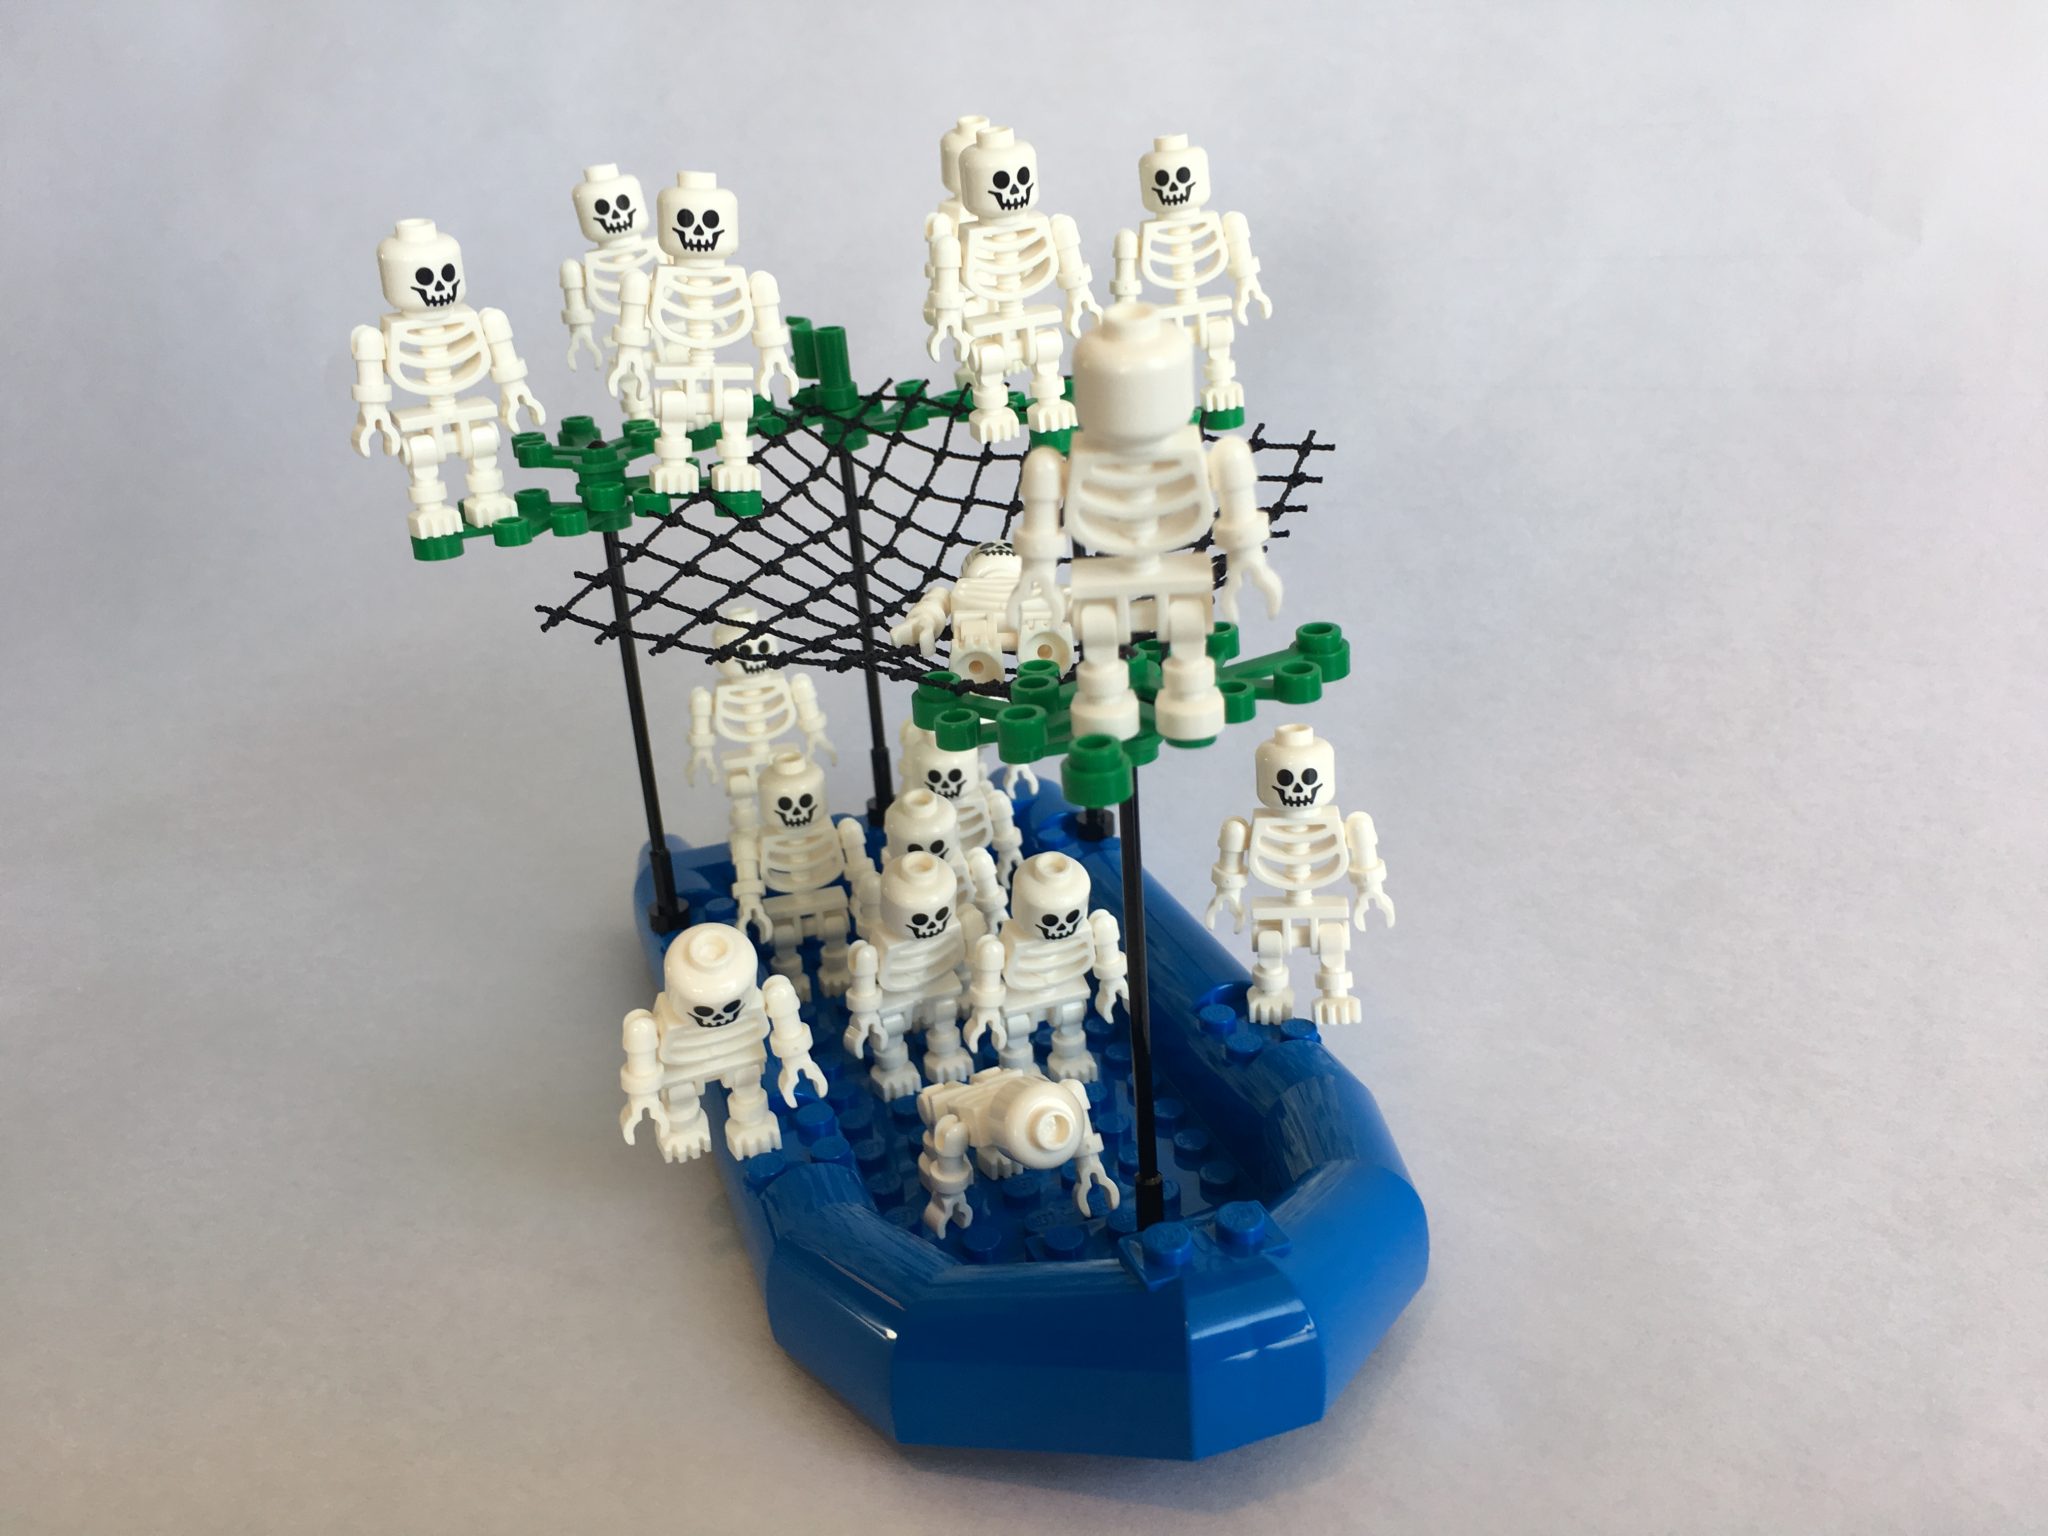 LEGO skeletons in boat